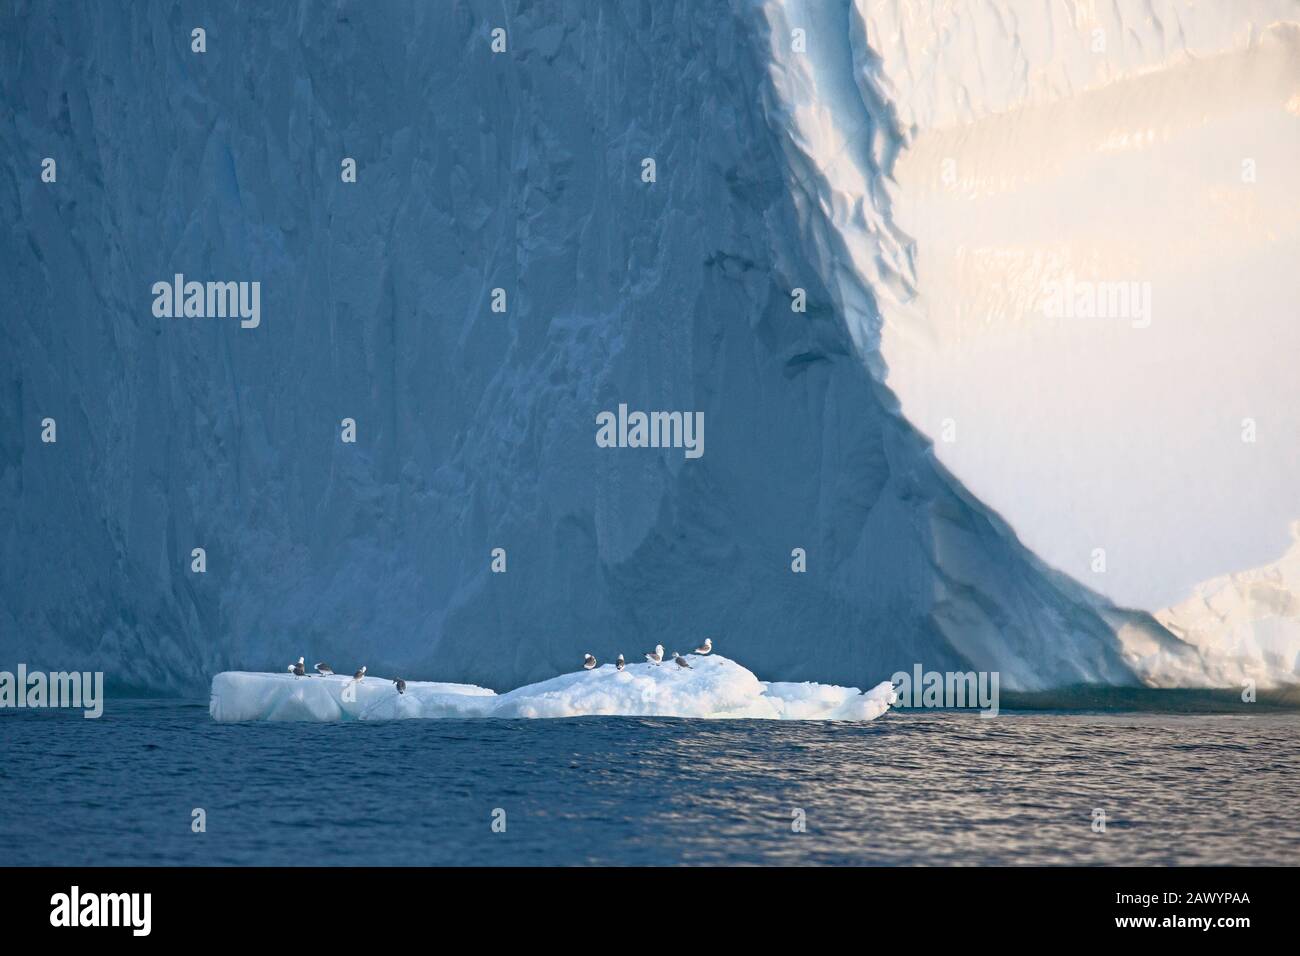 Oiseaux perchés sur la fonte de la glace sous l'iceberg Océan Atlantique Groenland Banque D'Images